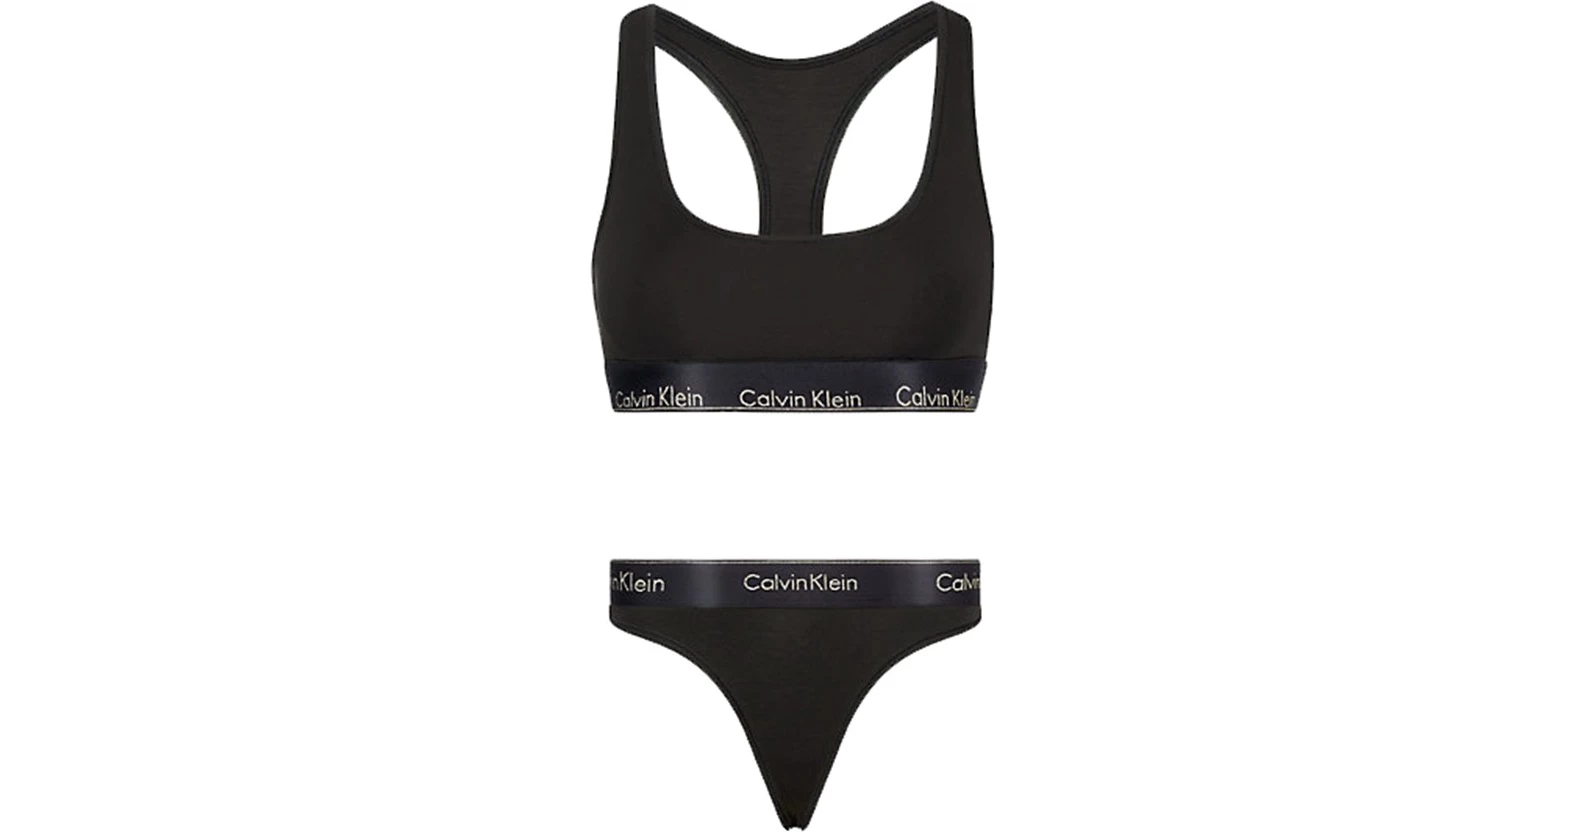 Γυναικείο Gift set Calvin Klein - Μαύρο - Αθλητικό σουτιέν & Slip